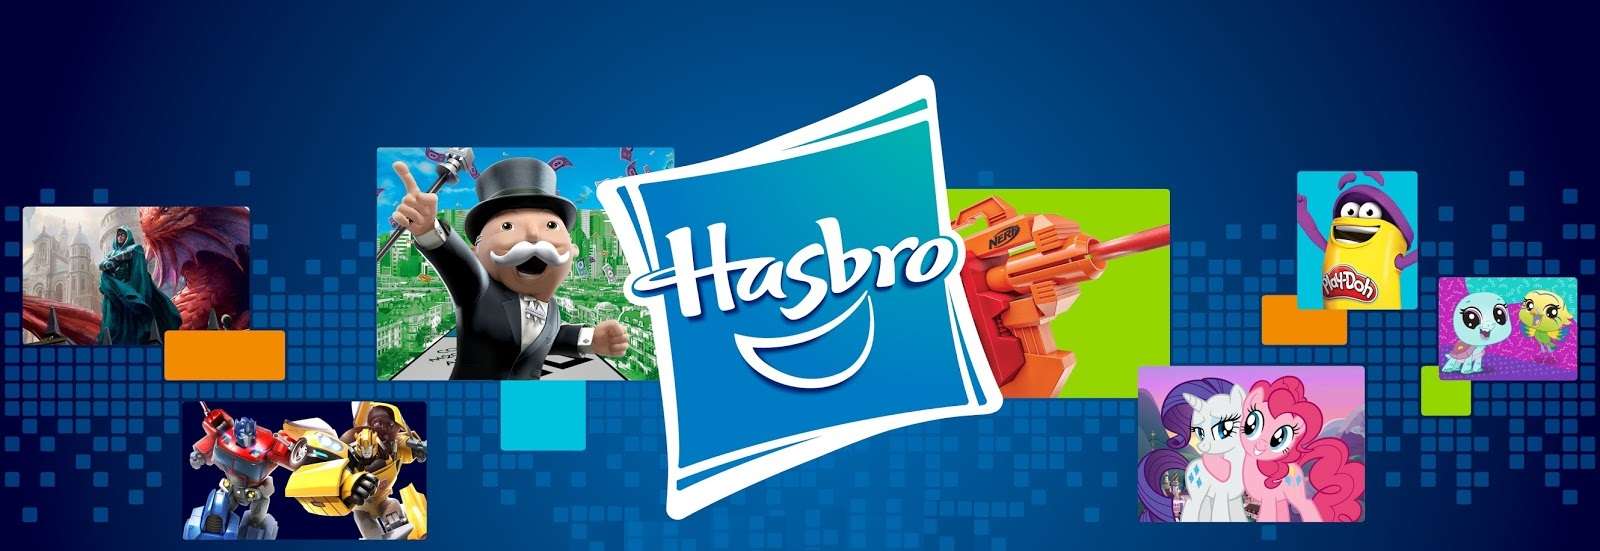 Hasbro-1